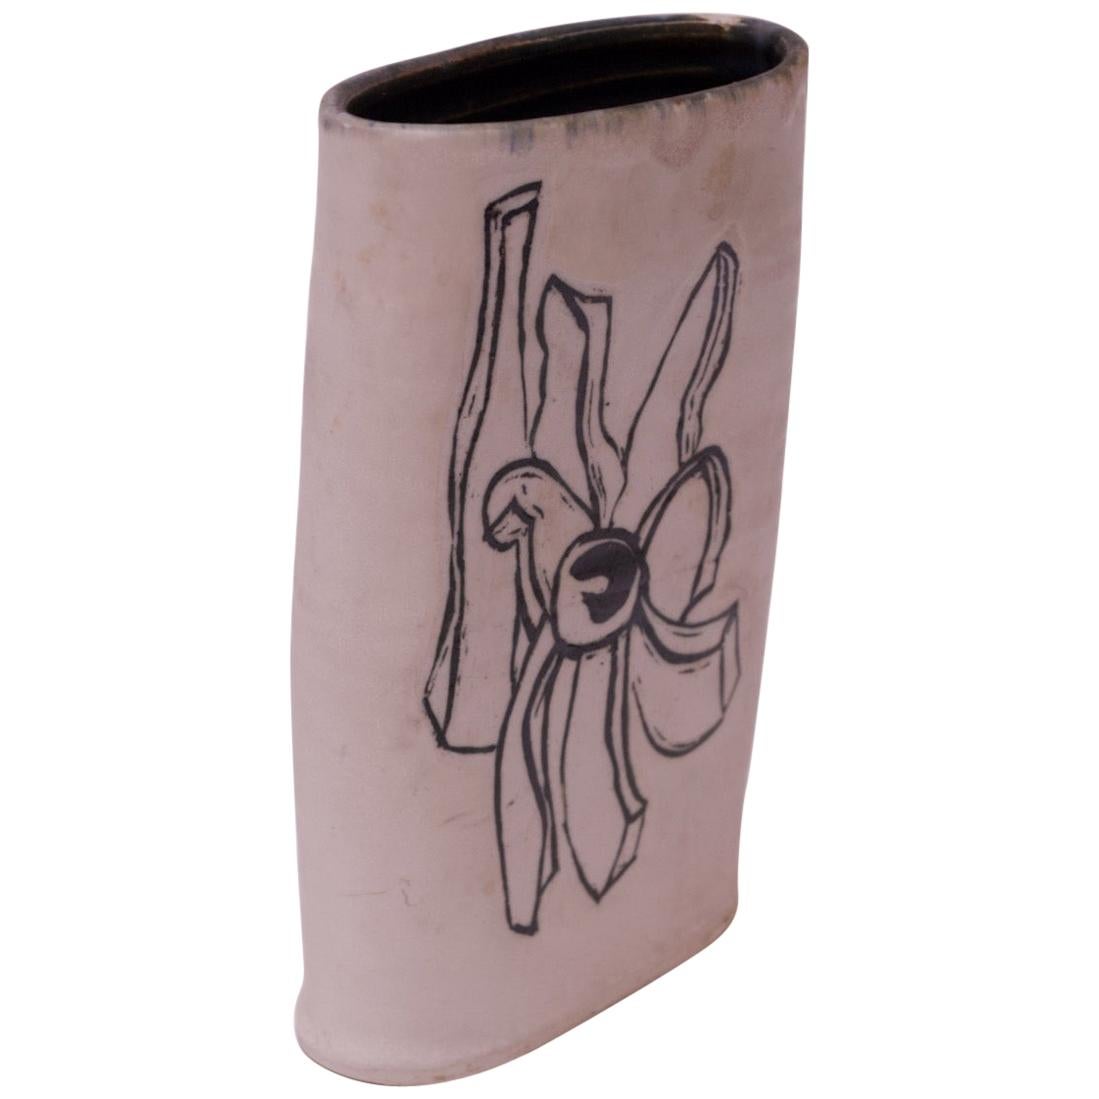 1976 Studio Stoneware Schwarz-weiße abstrakte florale Vase, signiert Pollack